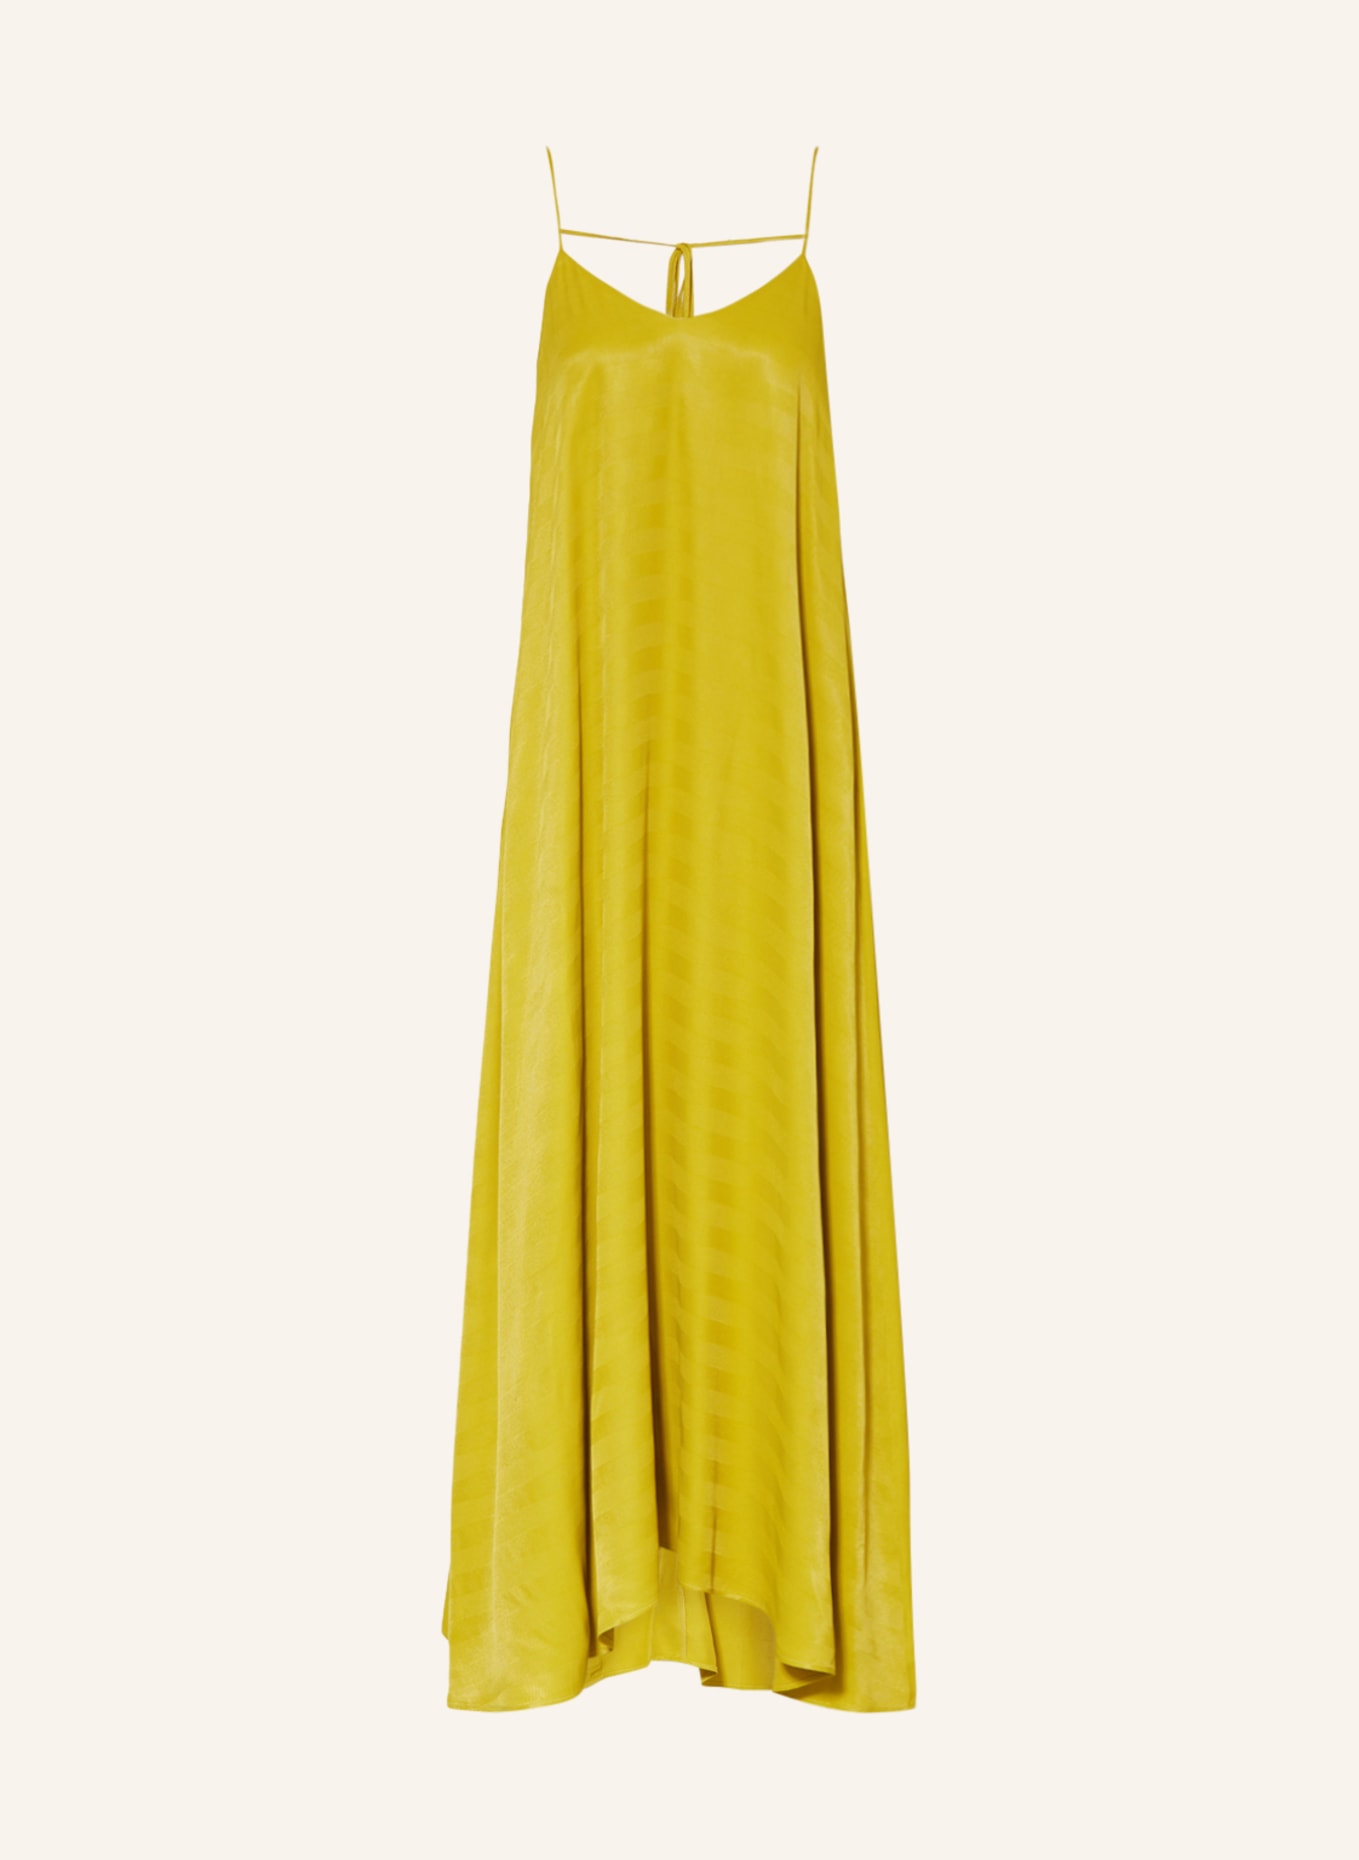 KARO KAUER Dress, Color: OLIVE (Image 1)